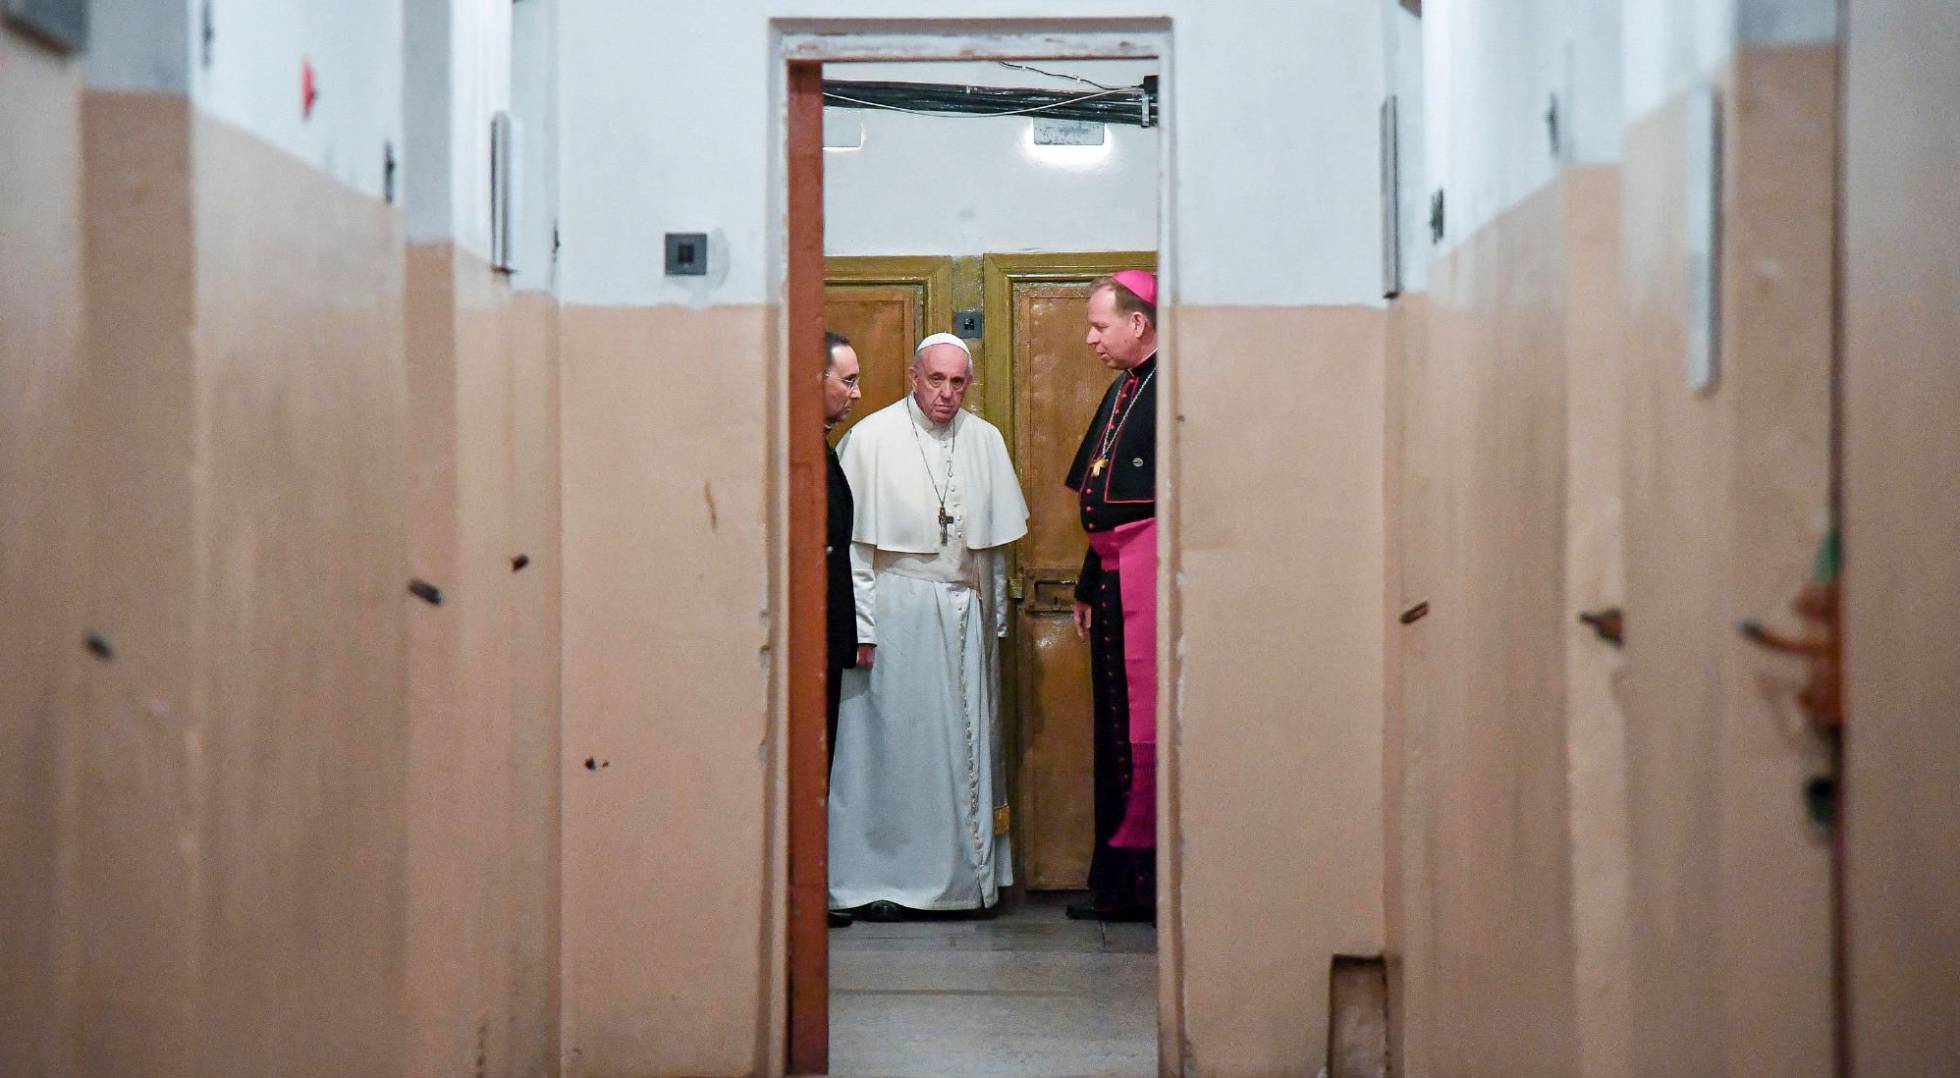 De maquiavélico, astuto, sangre fría y mentiroso tildan al papa Francisco